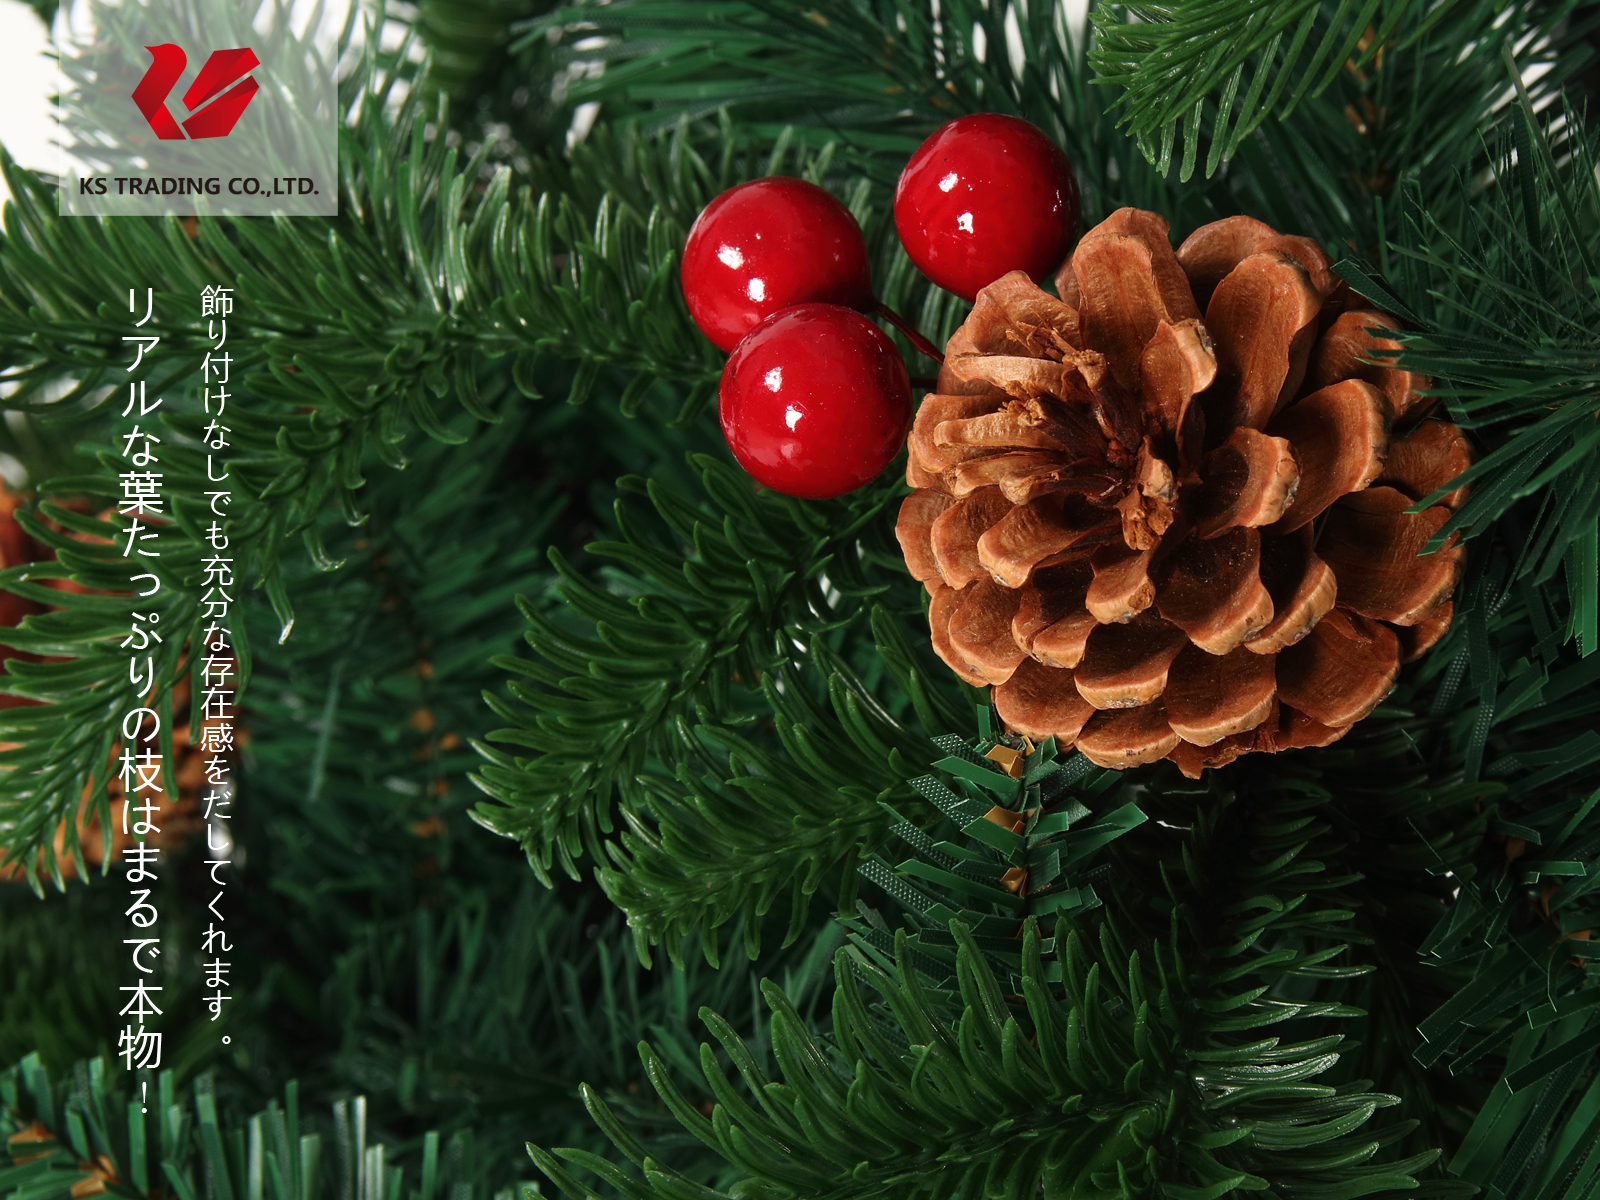 楽天市場 クリスマスツリー 枝大幅増量タイプ 松ぼっくり付き 赤い実付き 北欧風ツリー180cm Ksbm Kobe Store